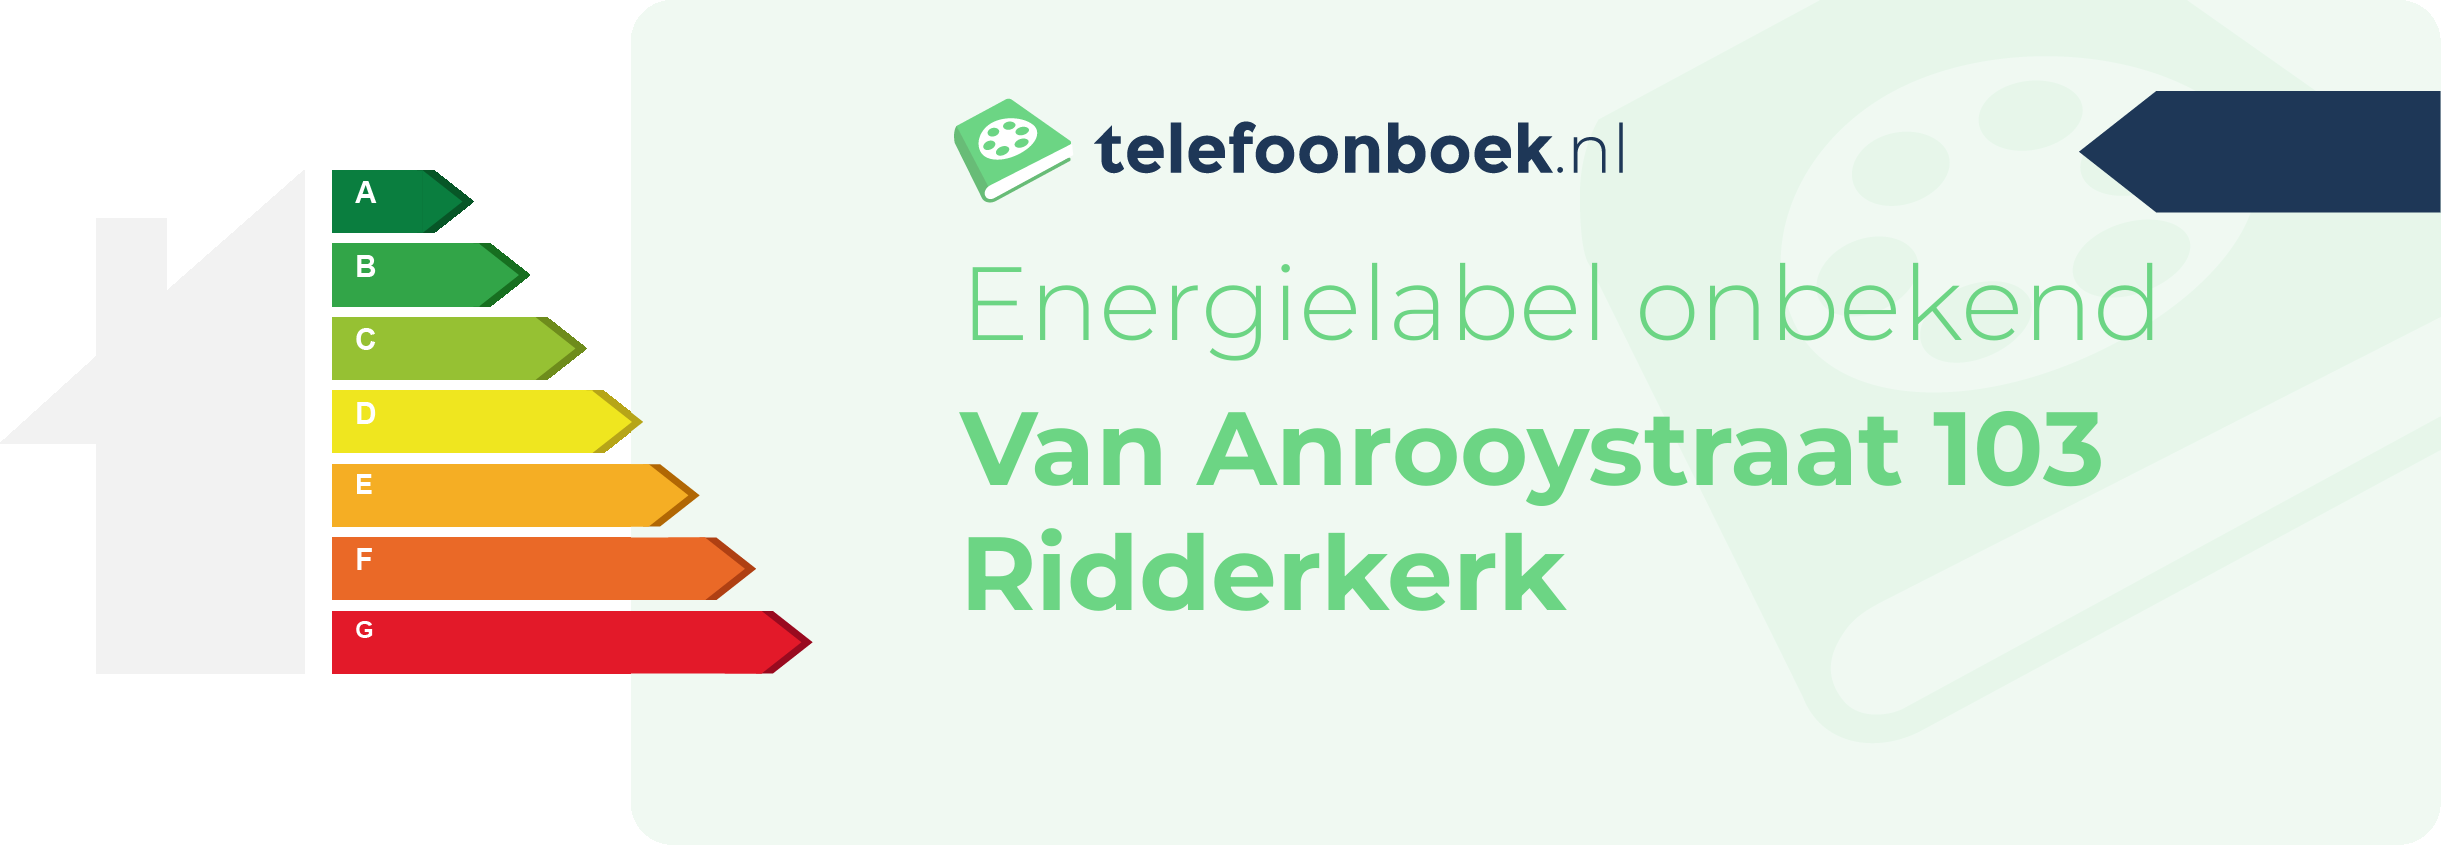 Energielabel Van Anrooystraat 103 Ridderkerk